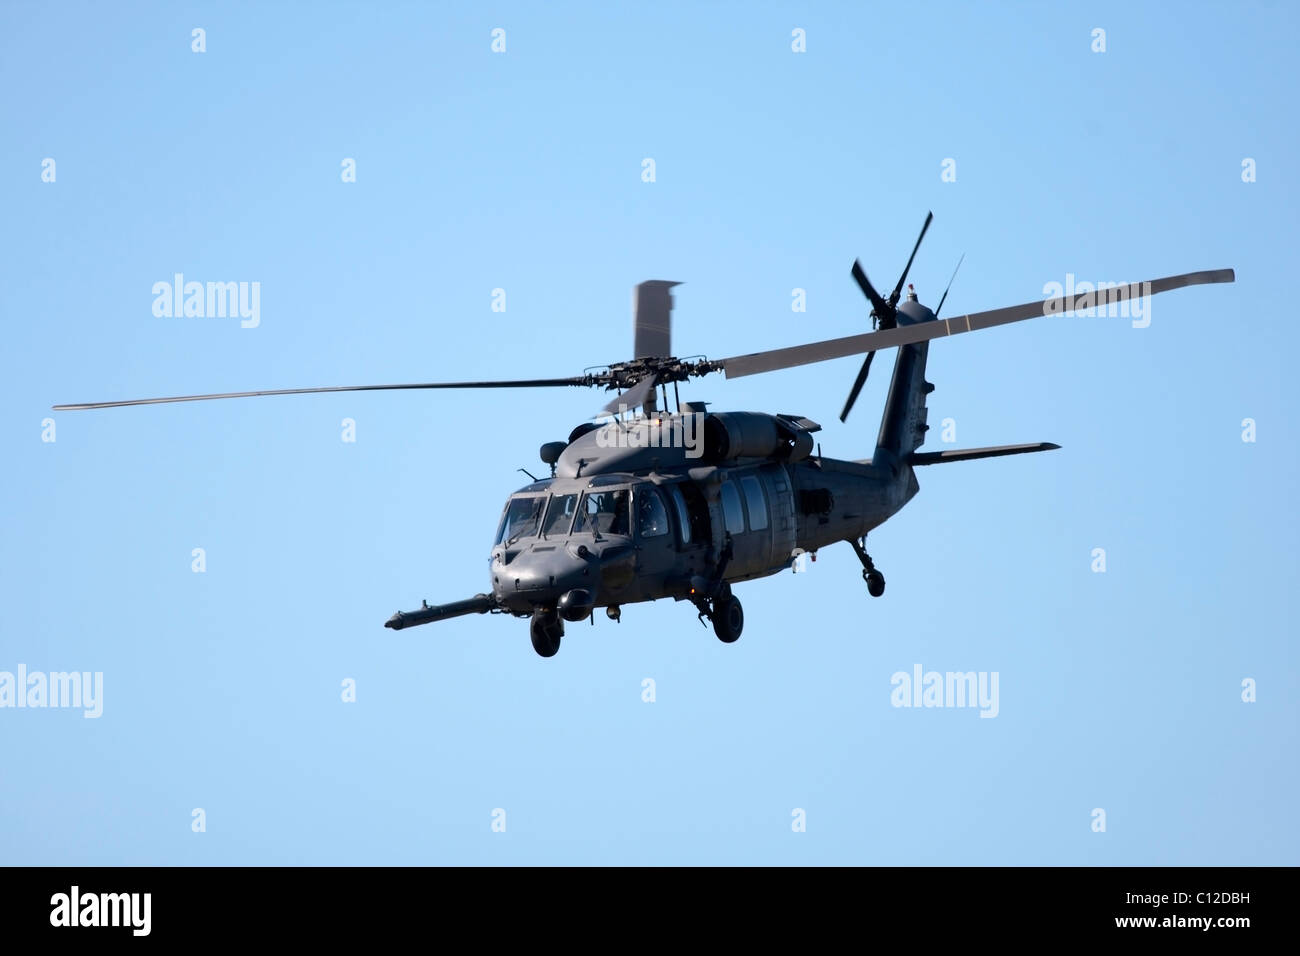 Hélicoptère militaire à l'air show à Cape Town Afrique du Sud Septembre 2010 Banque D'Images